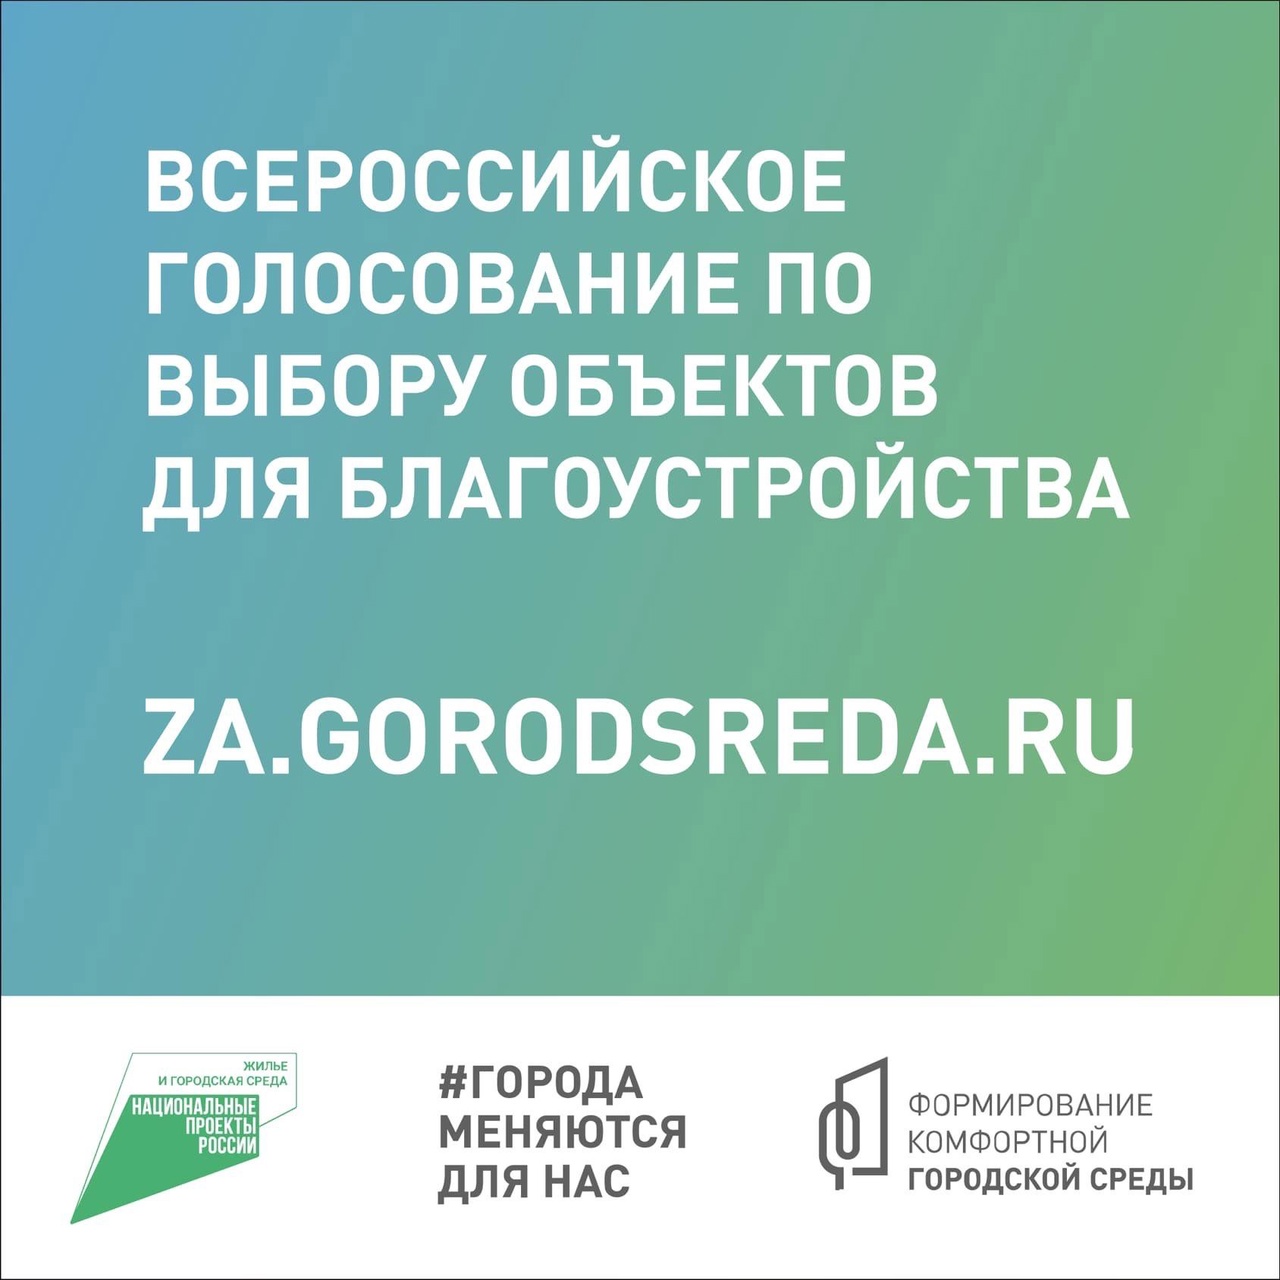 Онлайн-голосовании на платформе za.gorodsreda.ru по отбору объектов благоустройства